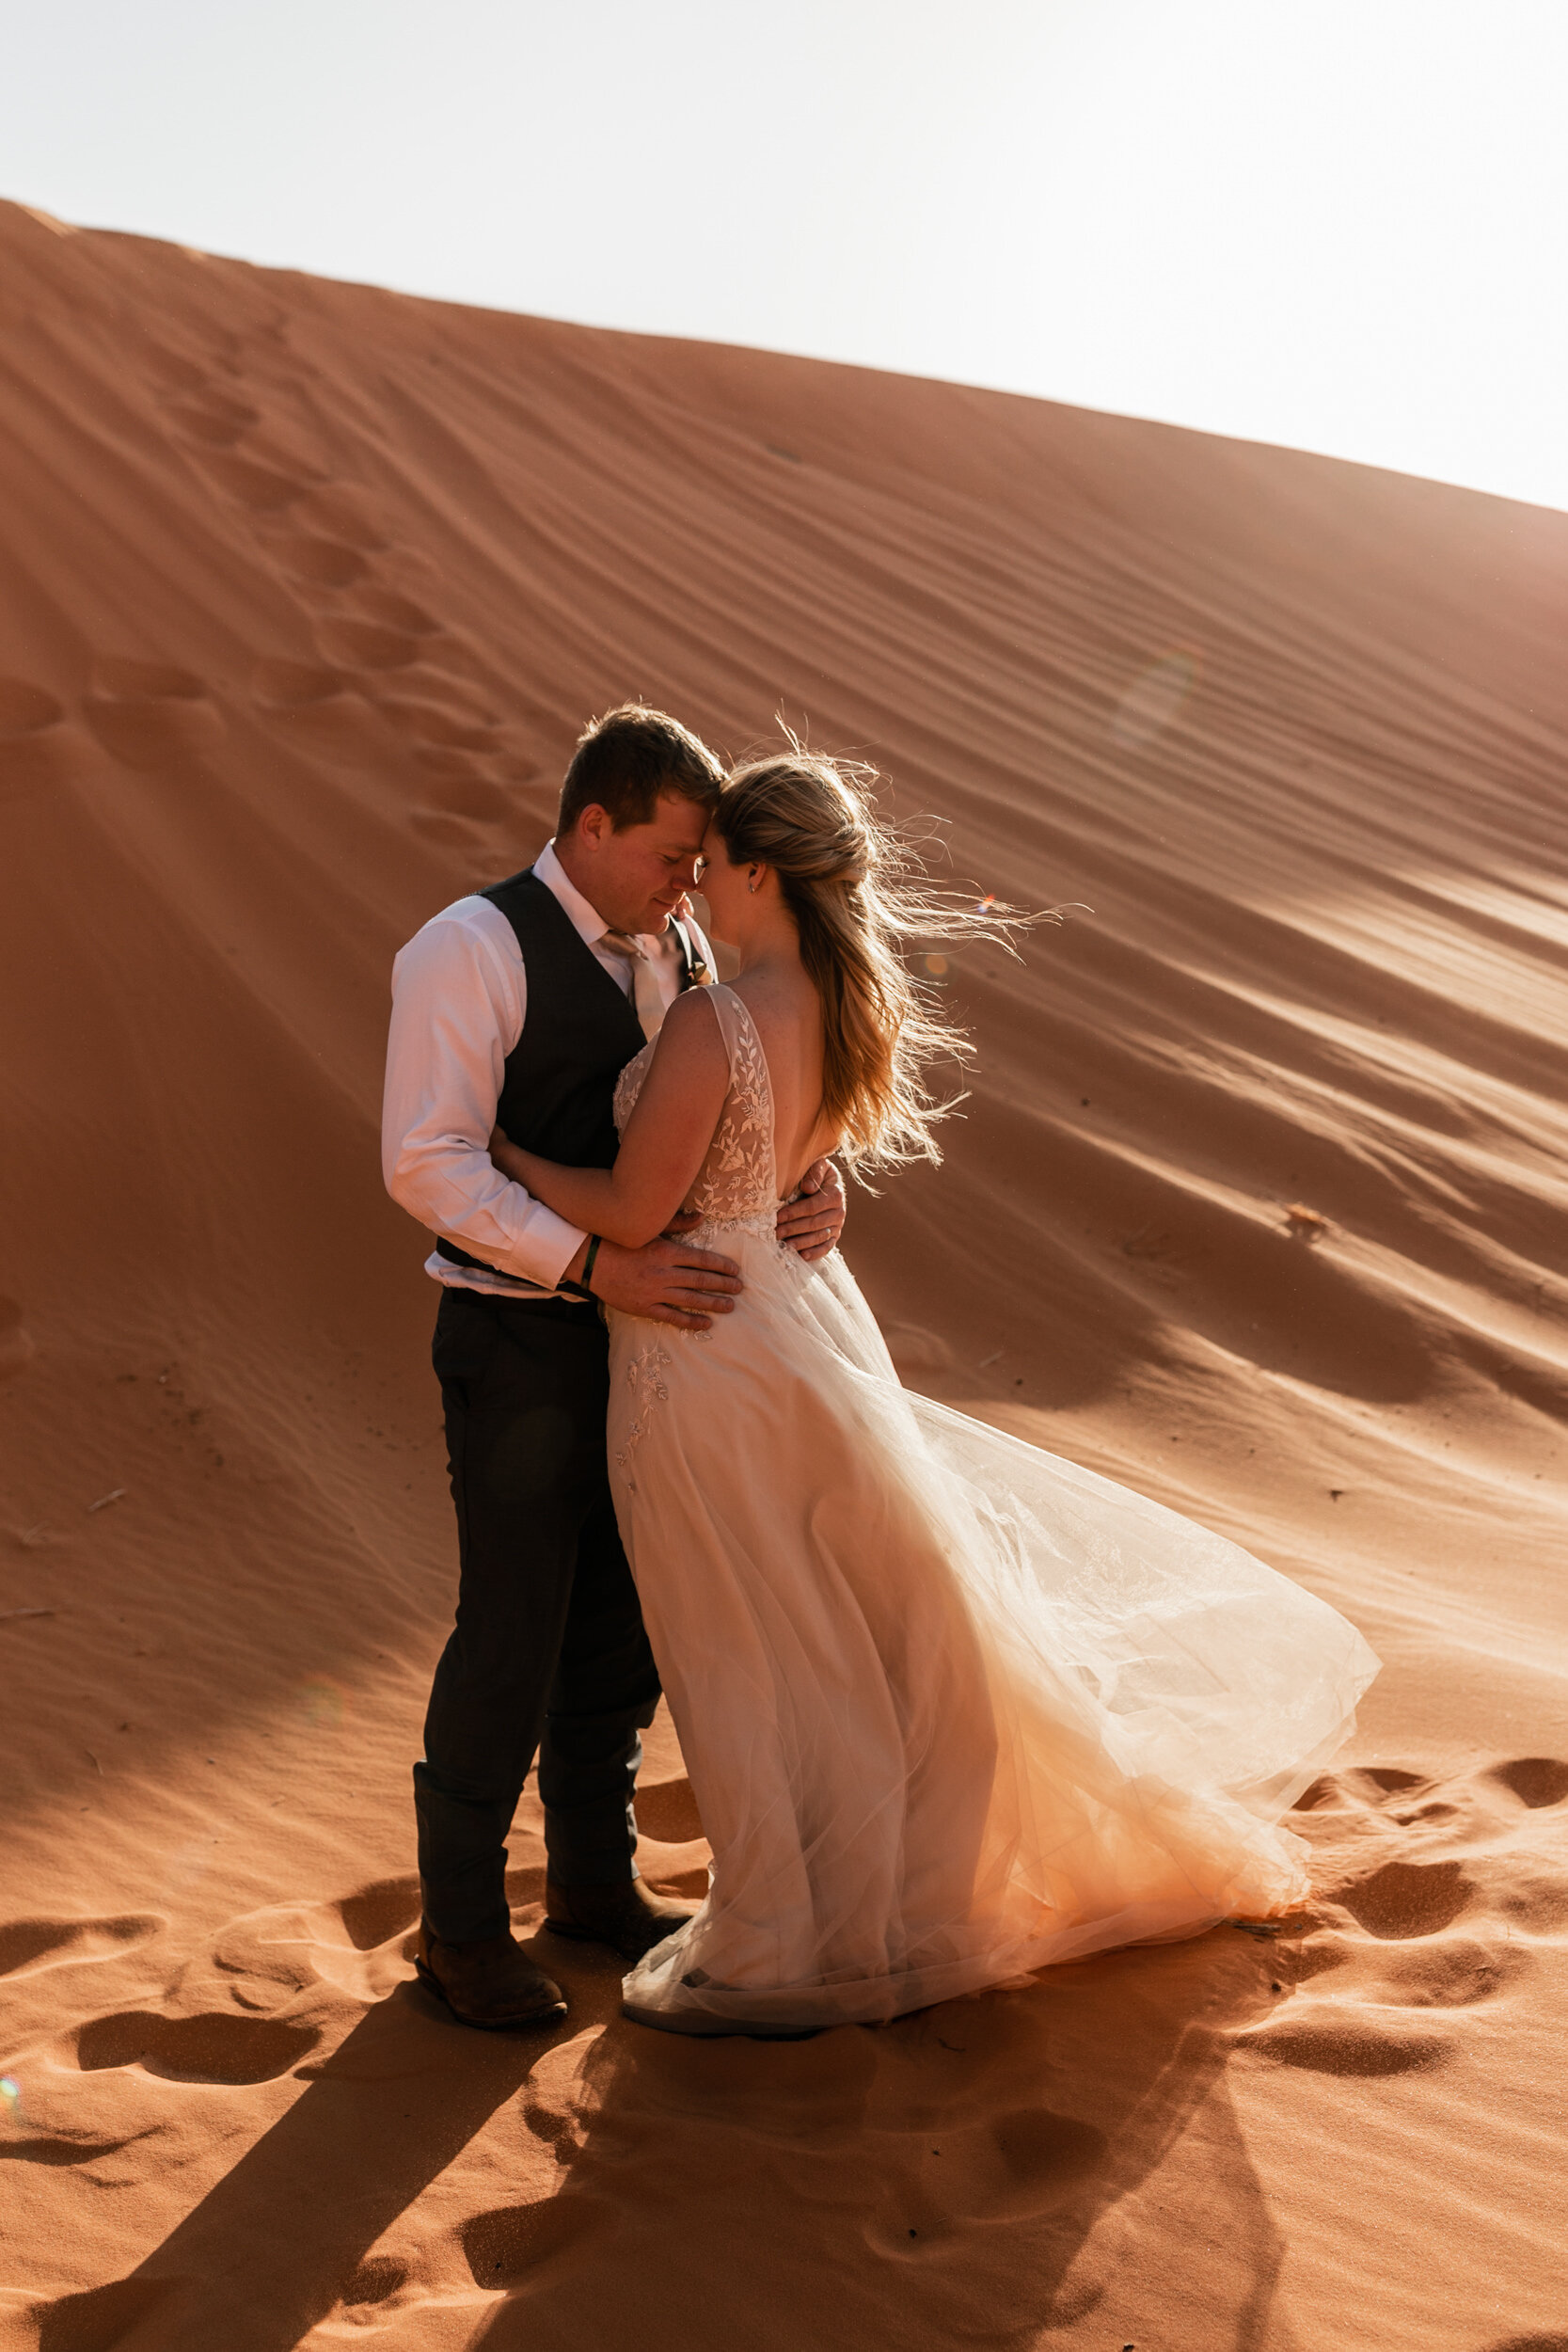 Intimate Utah Elopement | Adventurous Wedding in Sand Dunes | The Hearnes Photography